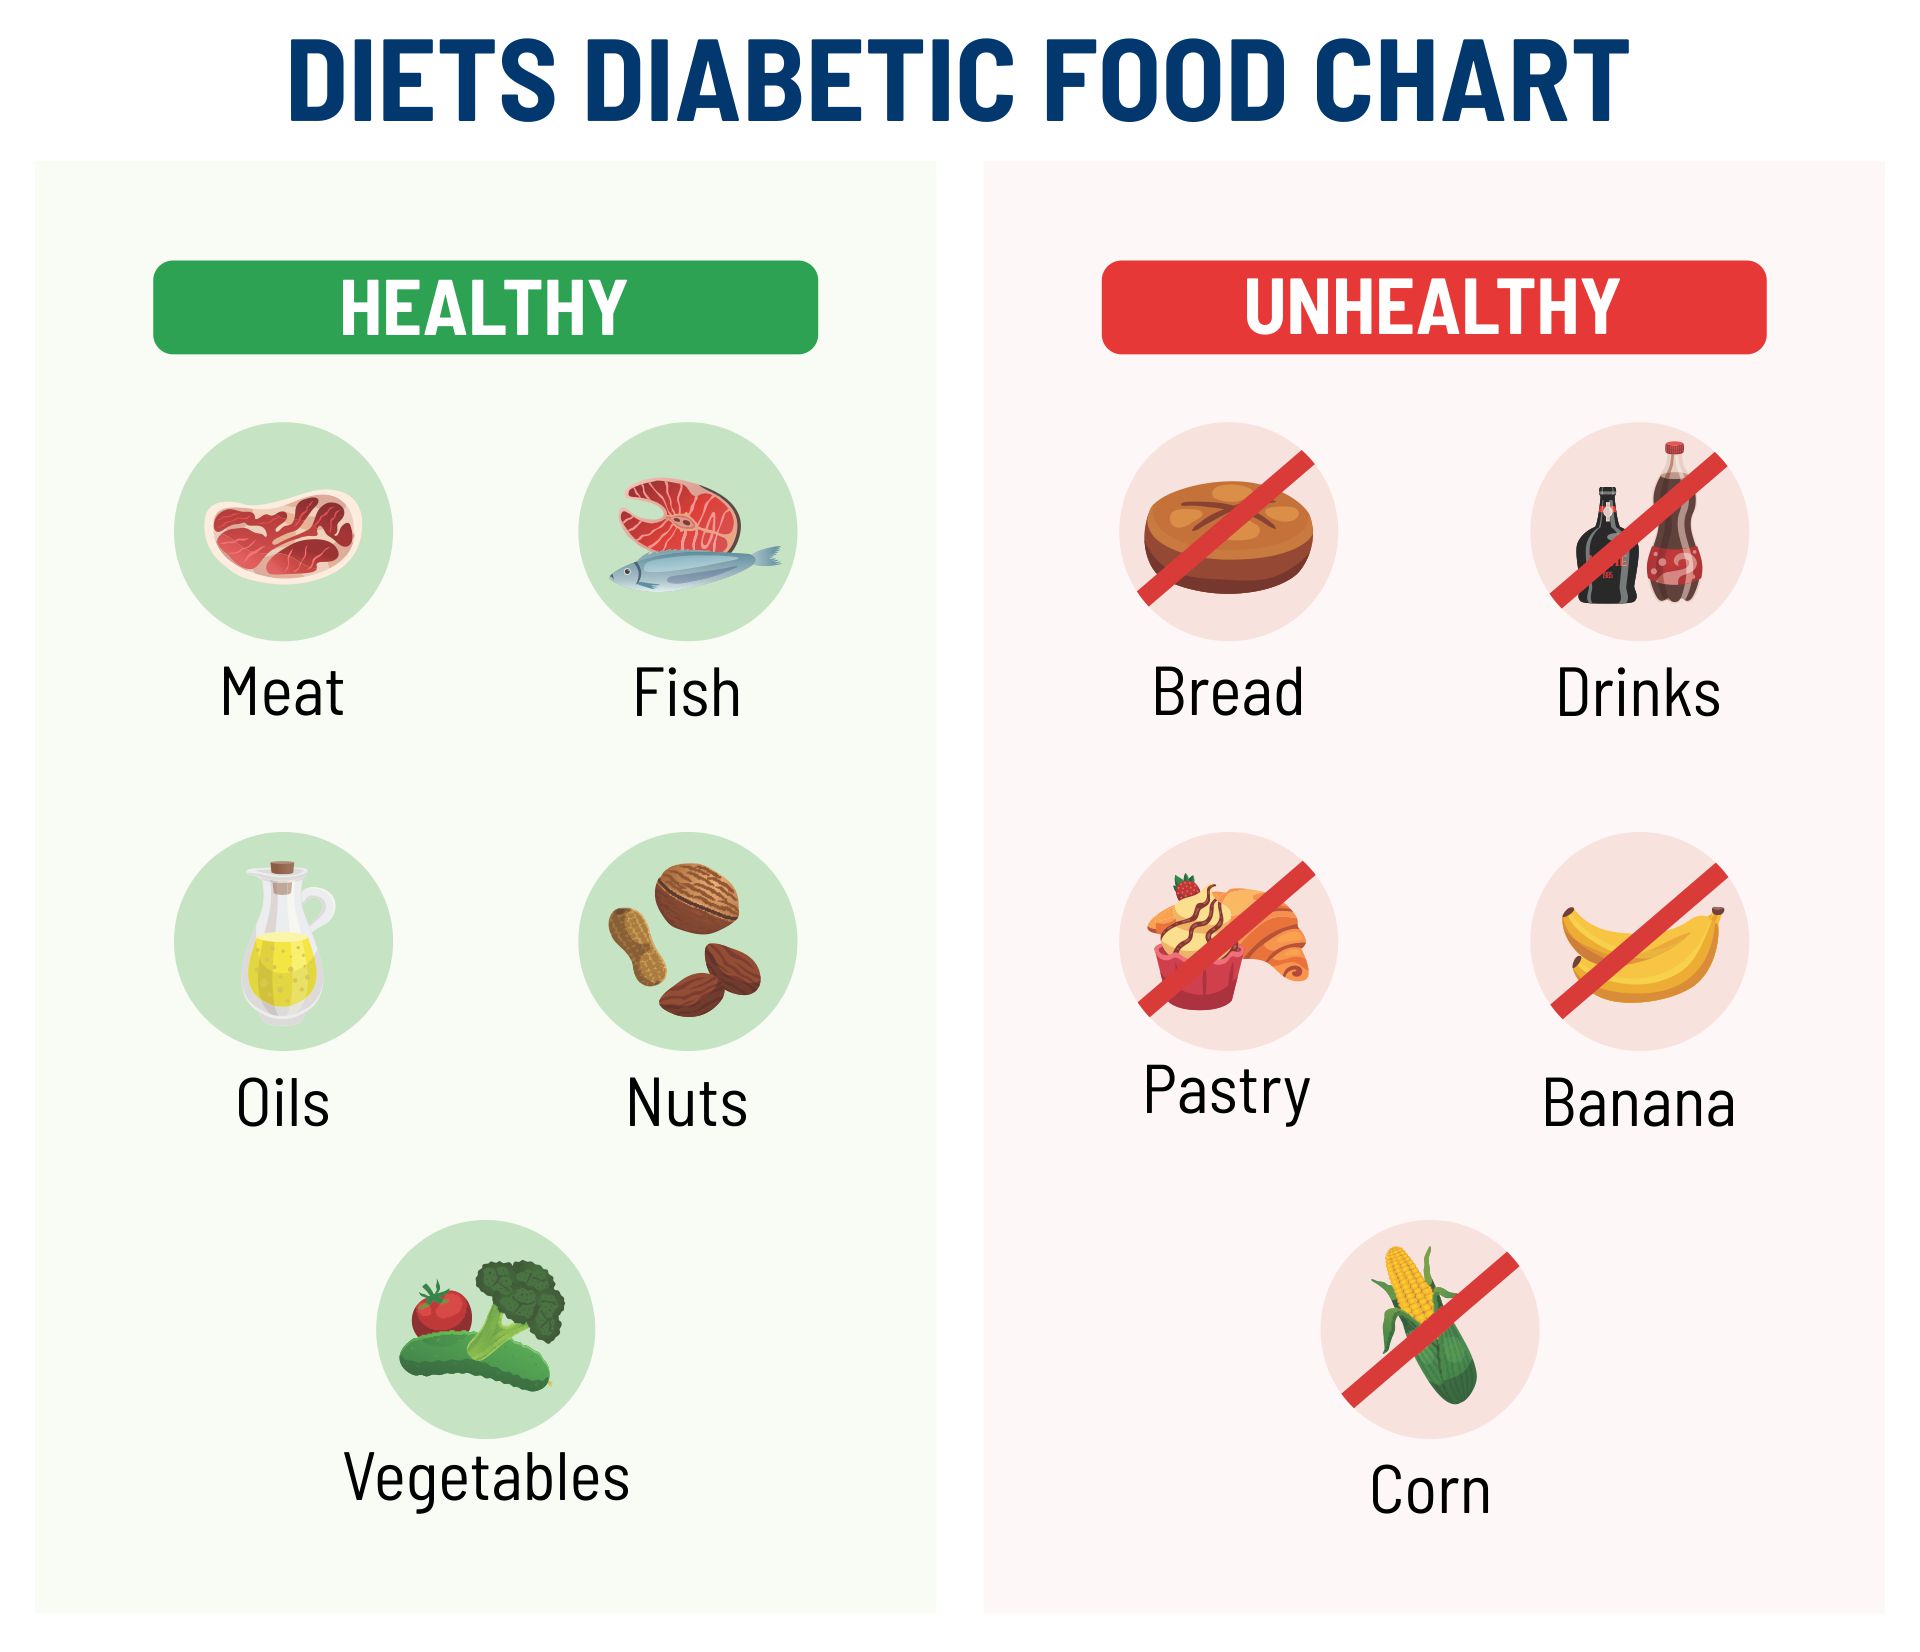 Diabetes Diets Diabetic Food Chart